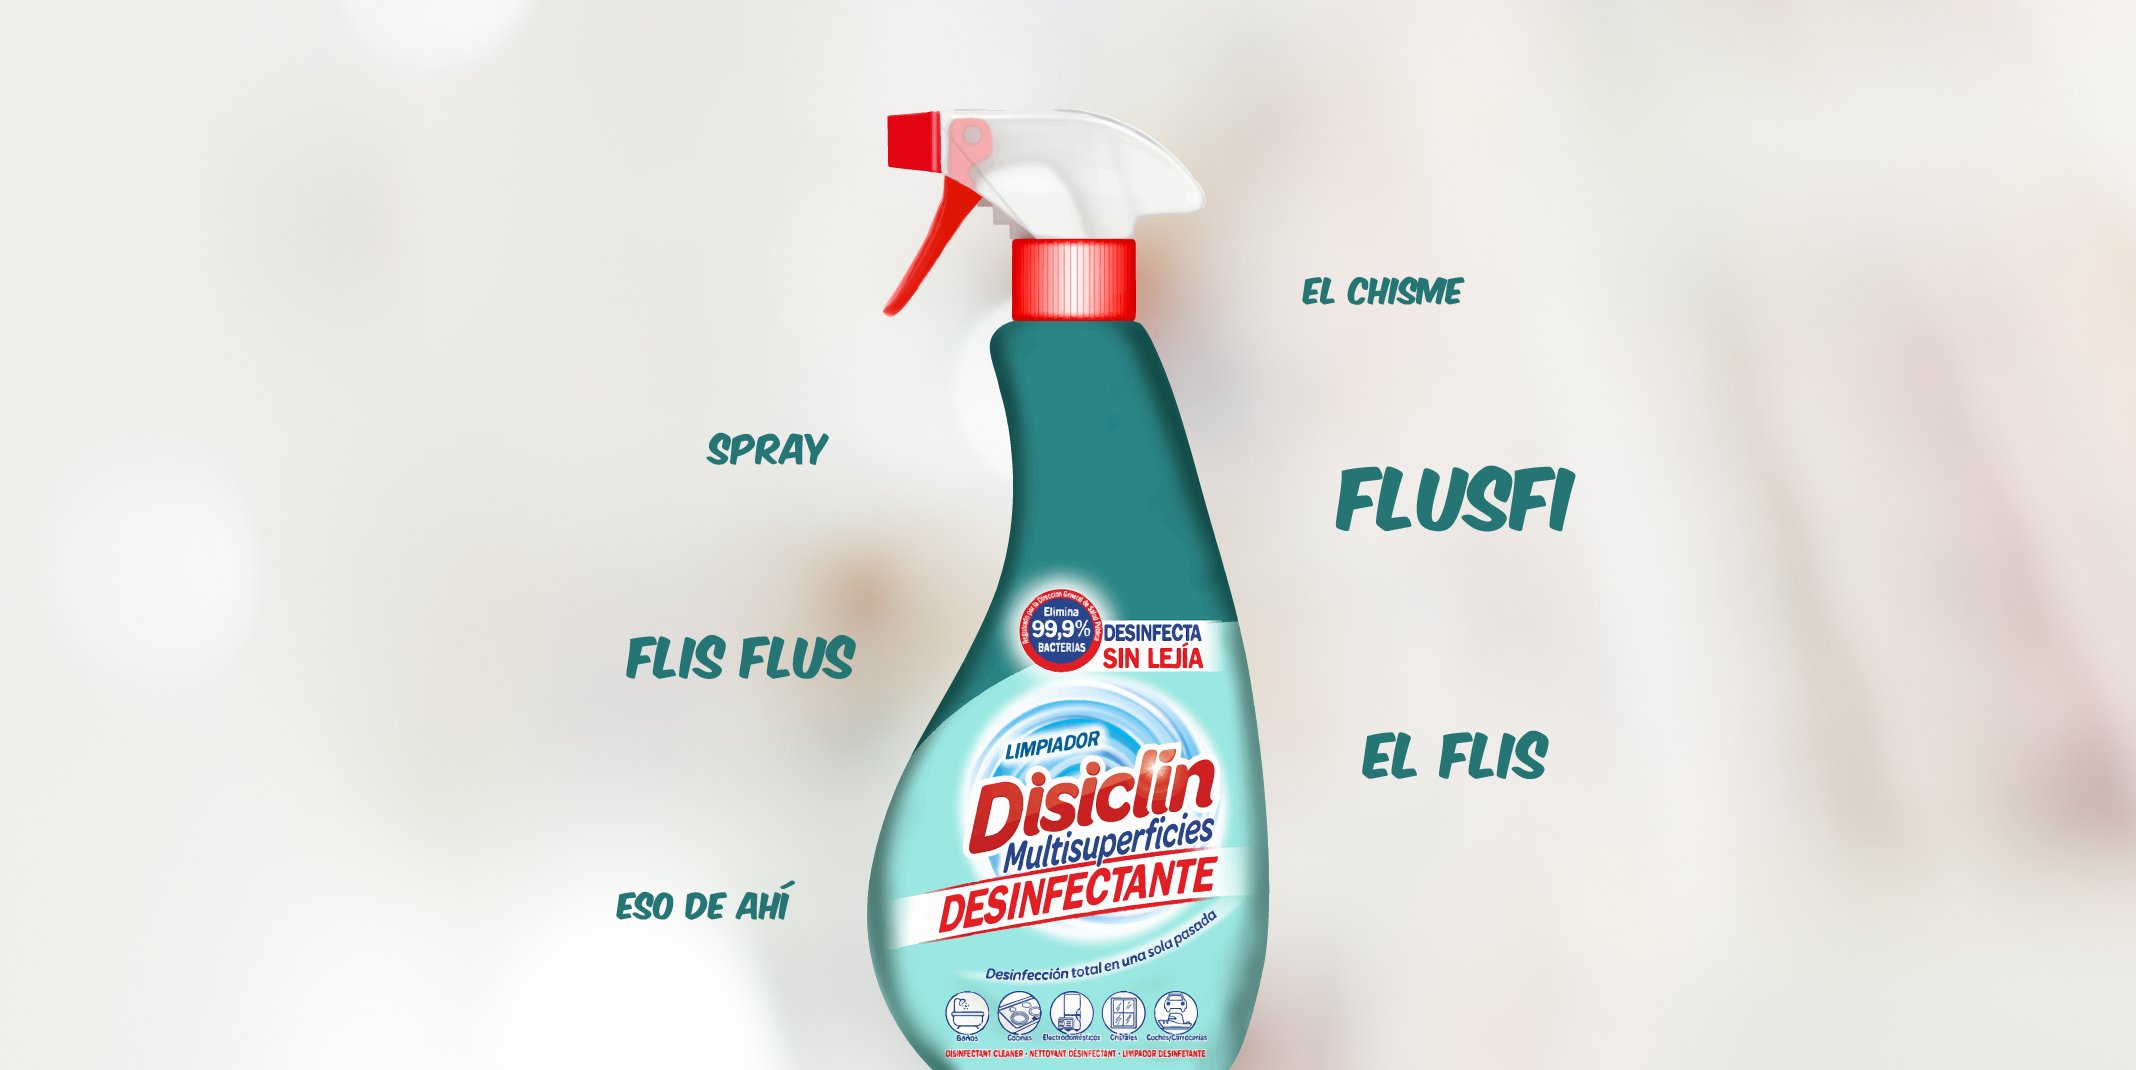 Disiclin on X: ¡Qué comience el debate! 😆 Flisflus, spray, el